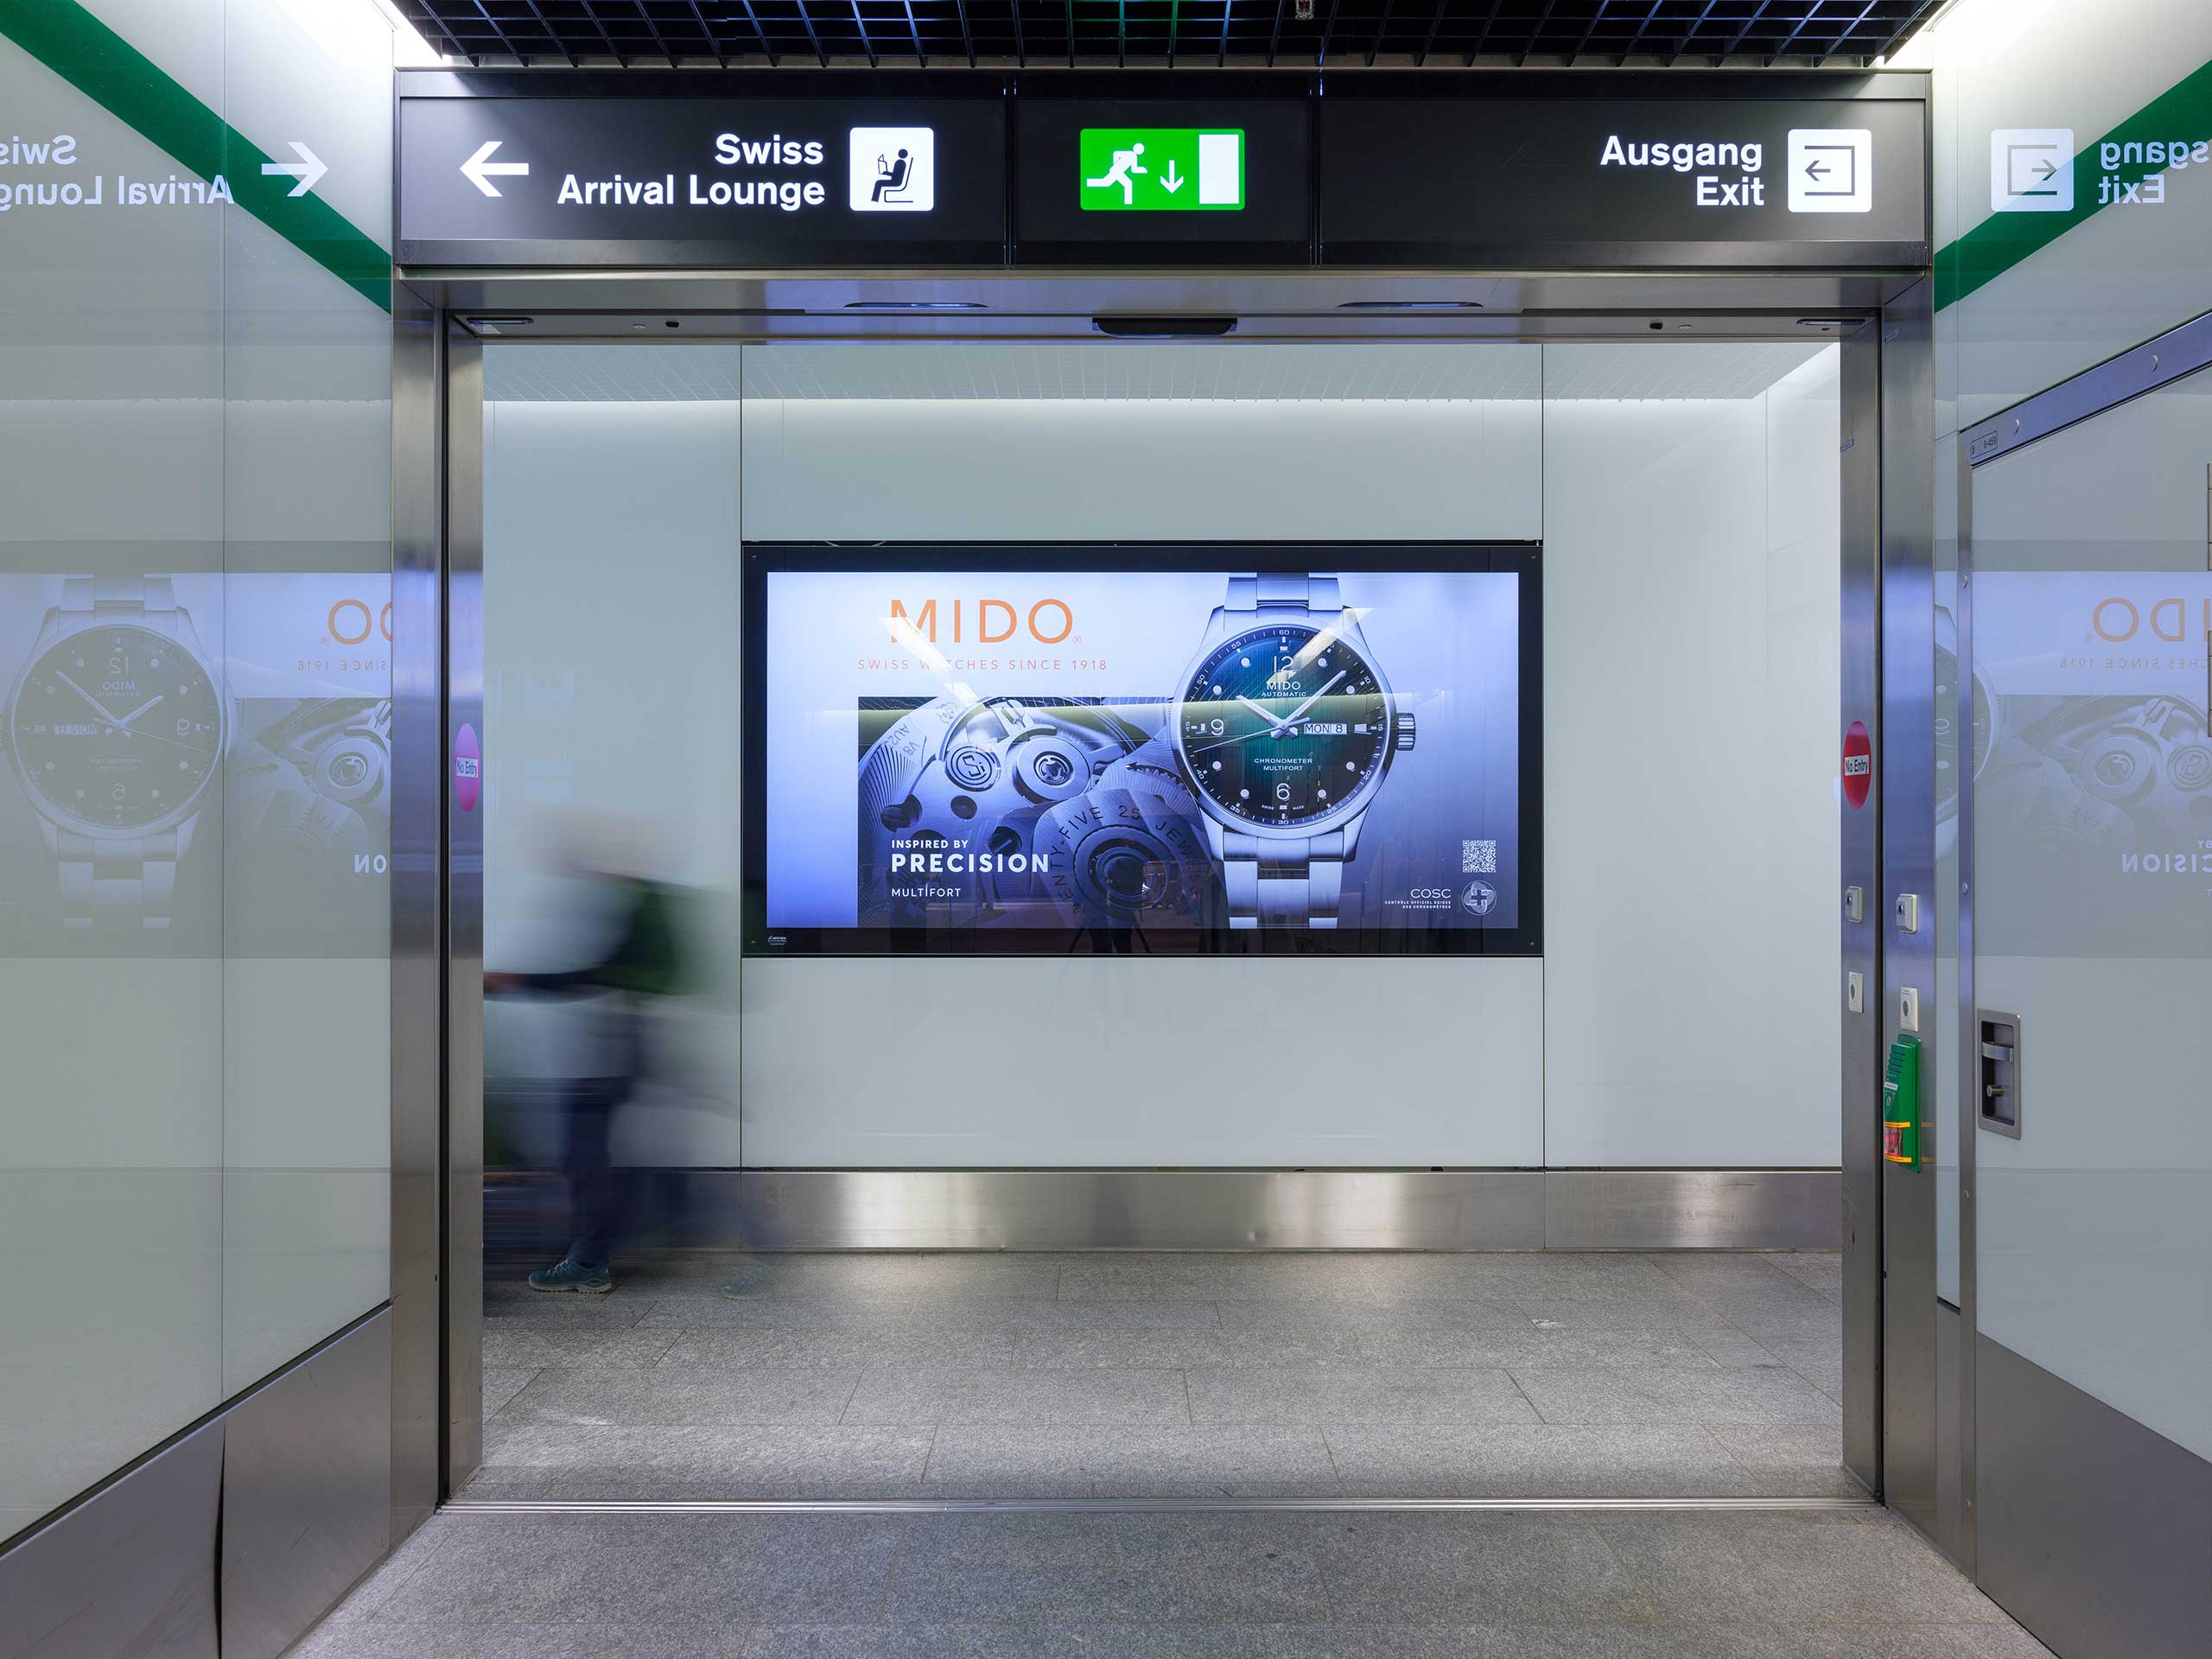 Zuerich – Super-size Flughafen your brand!